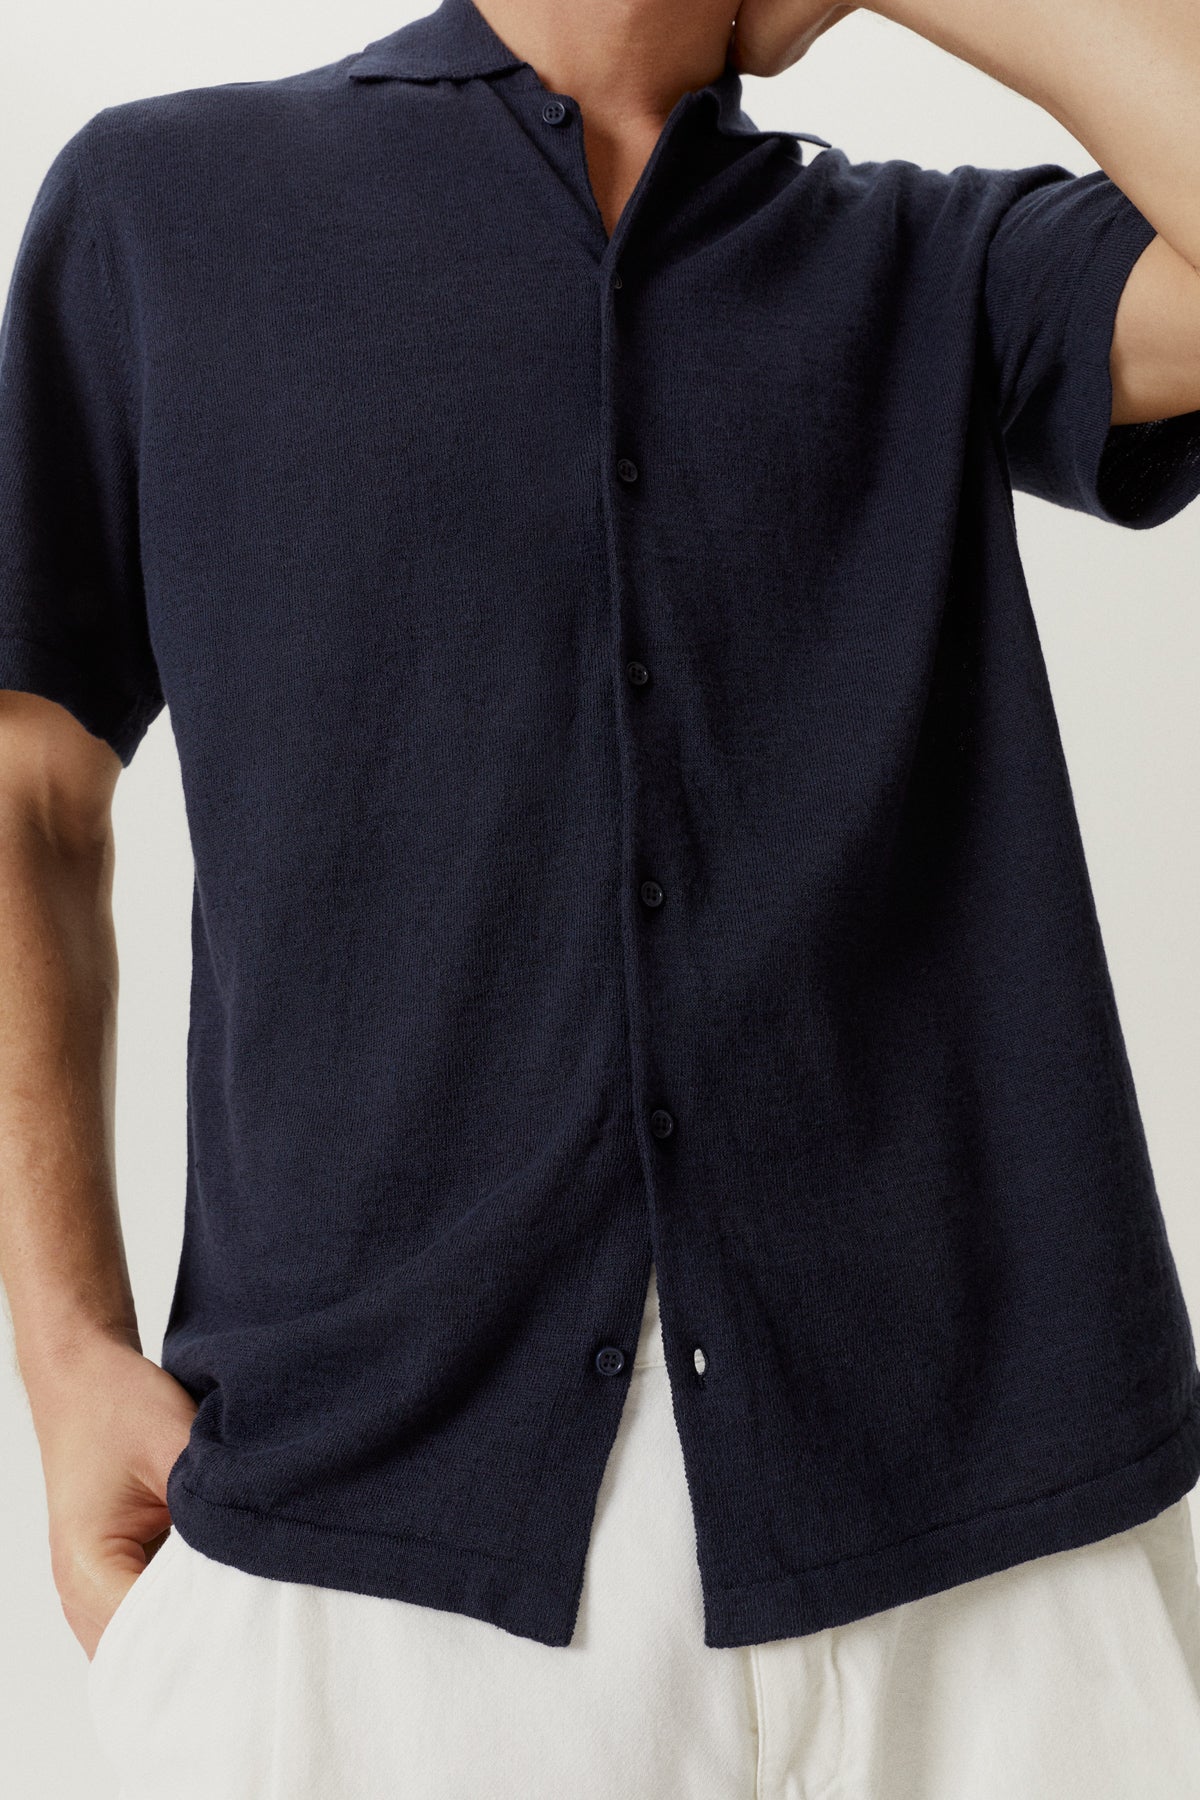 Blue Navy | The Linen Cotton Short Sleeve Shirt